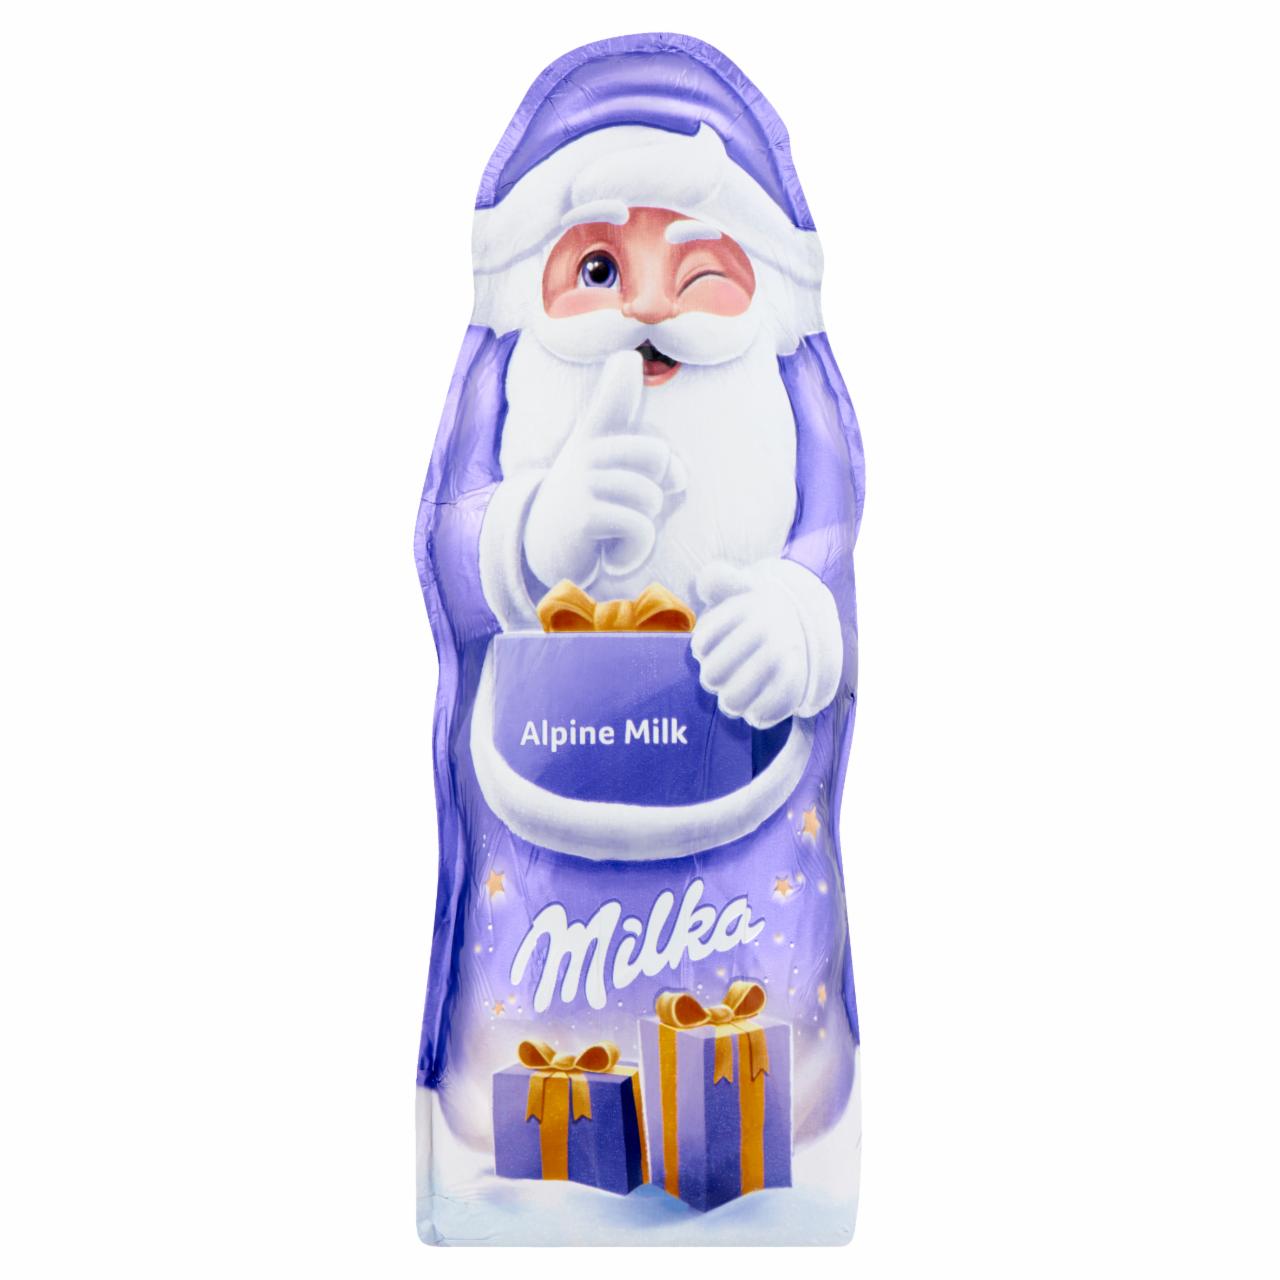 Képek - Milka Alpine Milk tejcsokoládé Mikulás 90 g